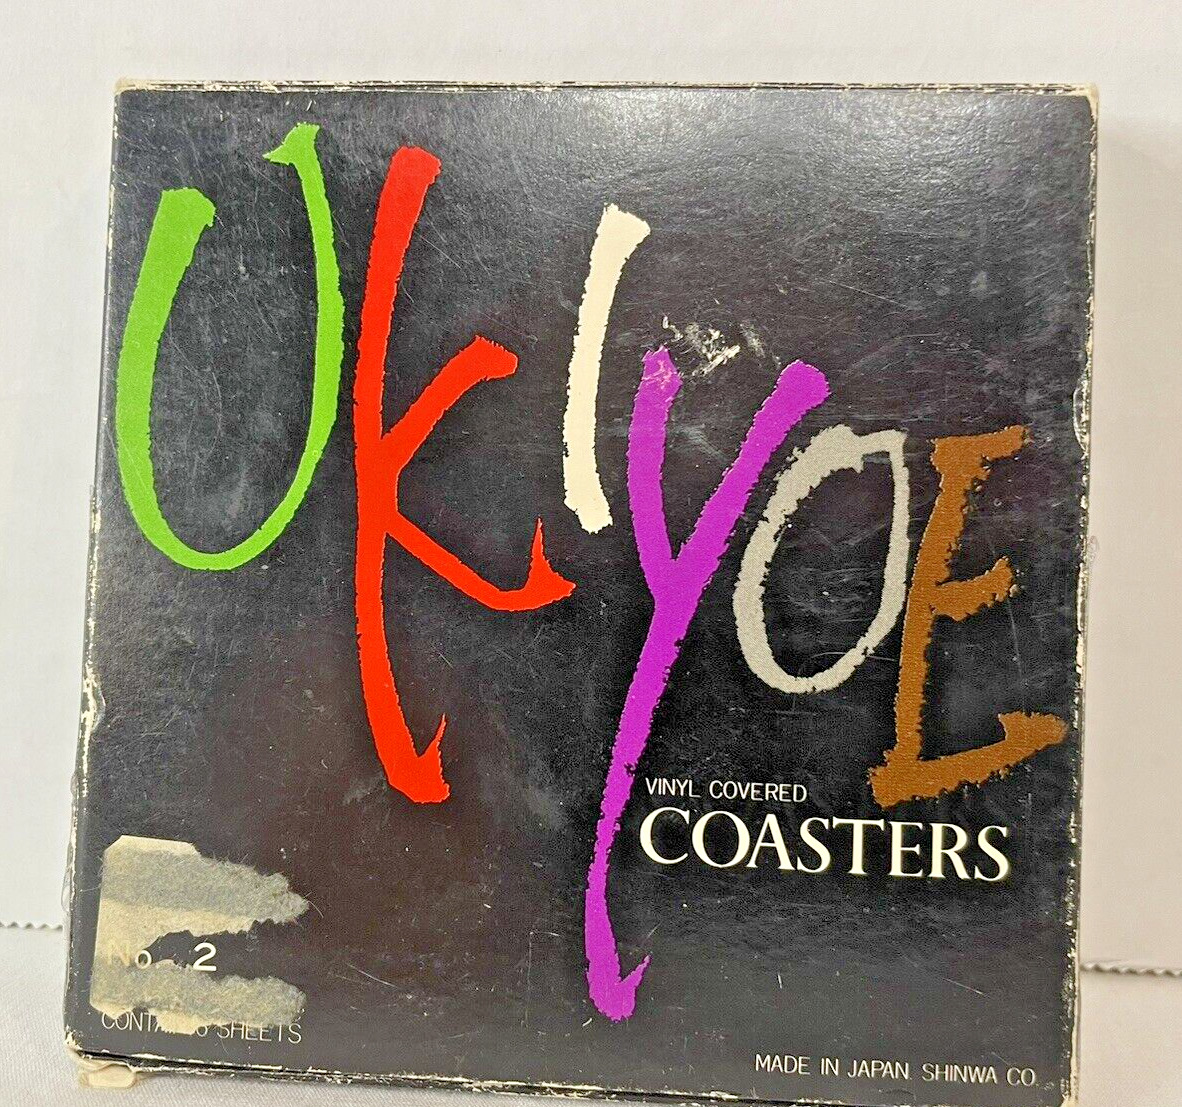 Vintage 6 Ukiyoe Japanese Woodblock Printed Vinyl Covered Coasters New